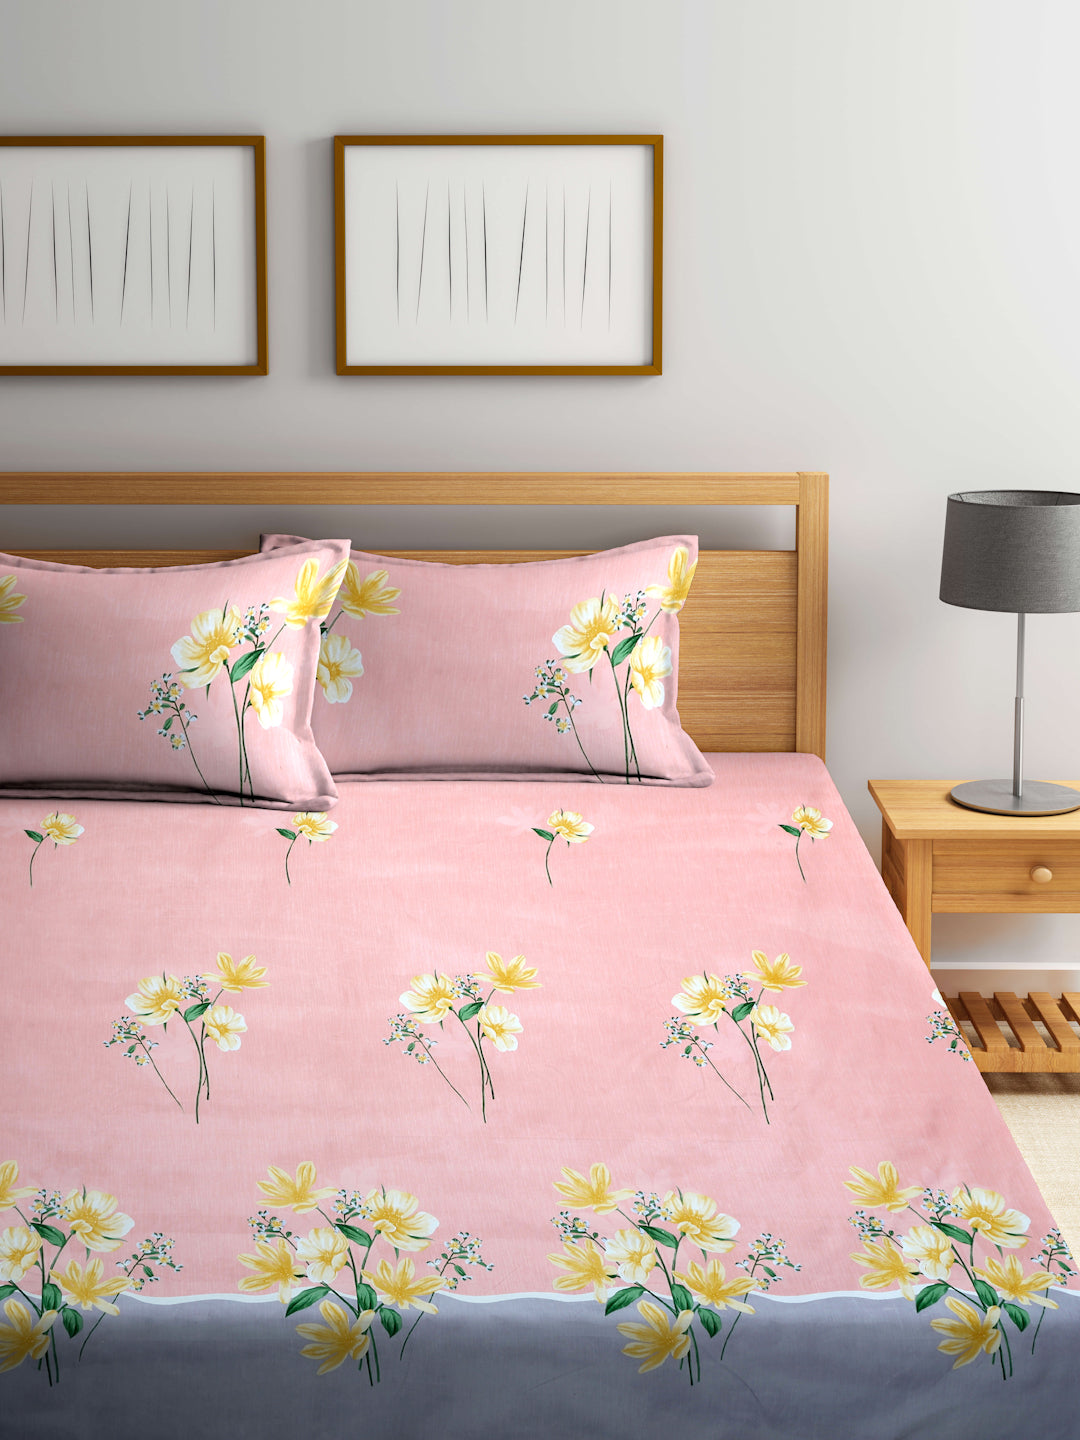 Arrabi Peach Floral TC Cotton Blend Super King Size Bedsheet with 2 Pillow Covers (270 X 260 cm)